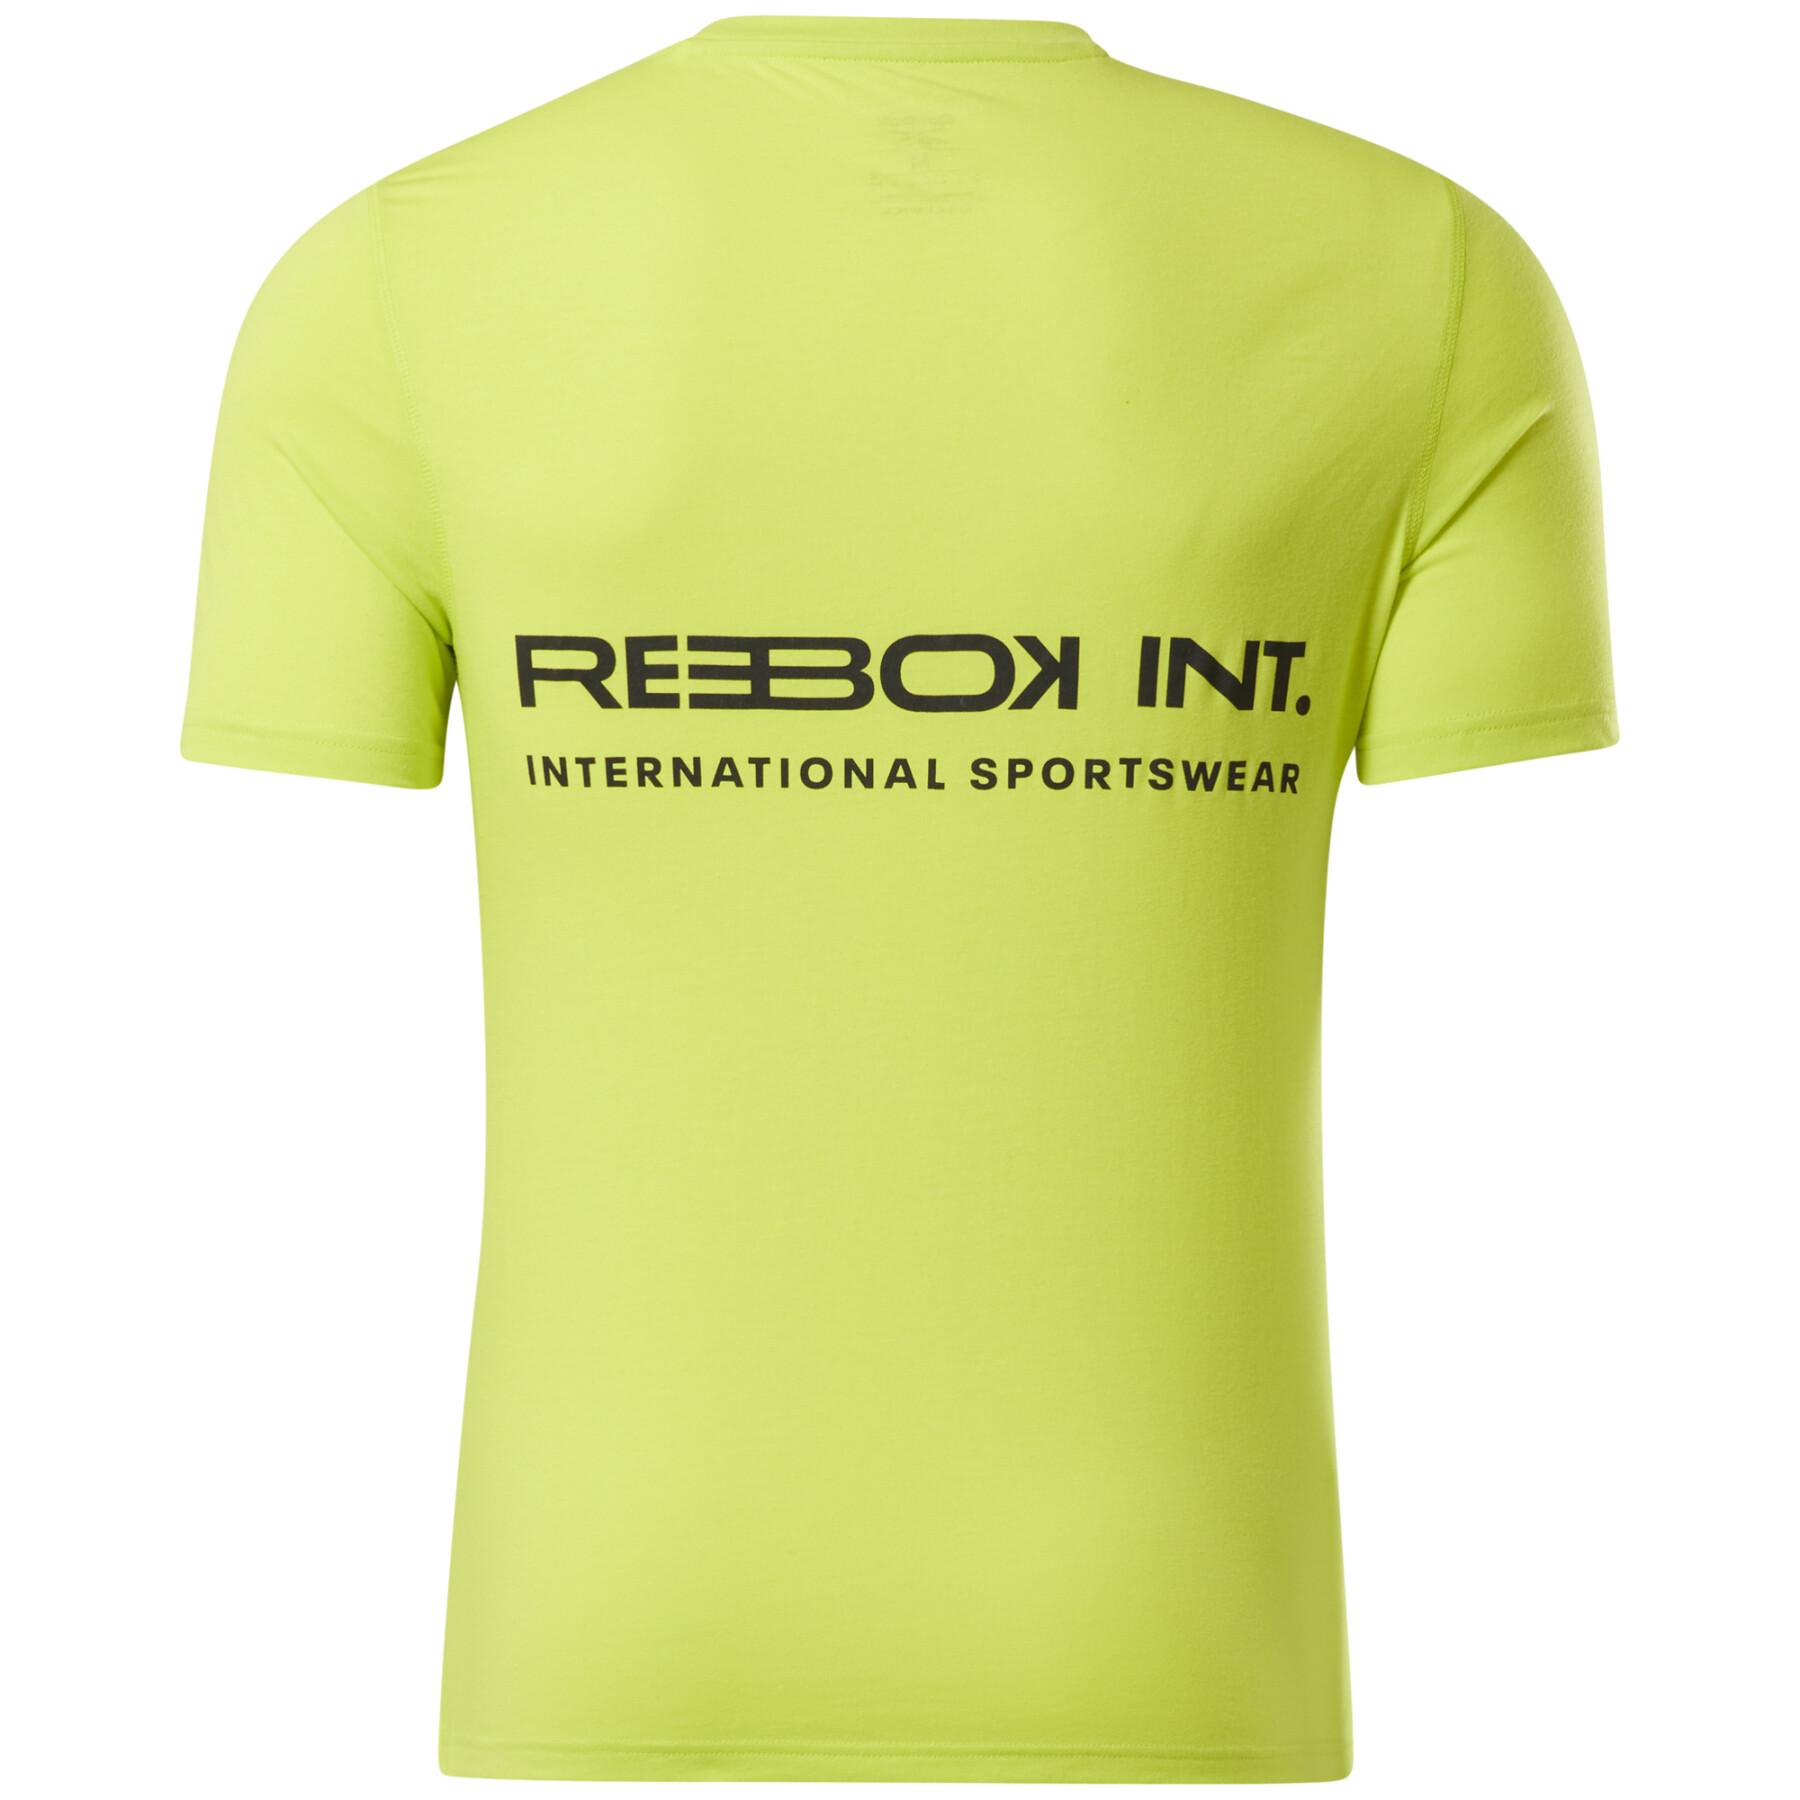 Camiseta Reebok Activchill Graphic Move